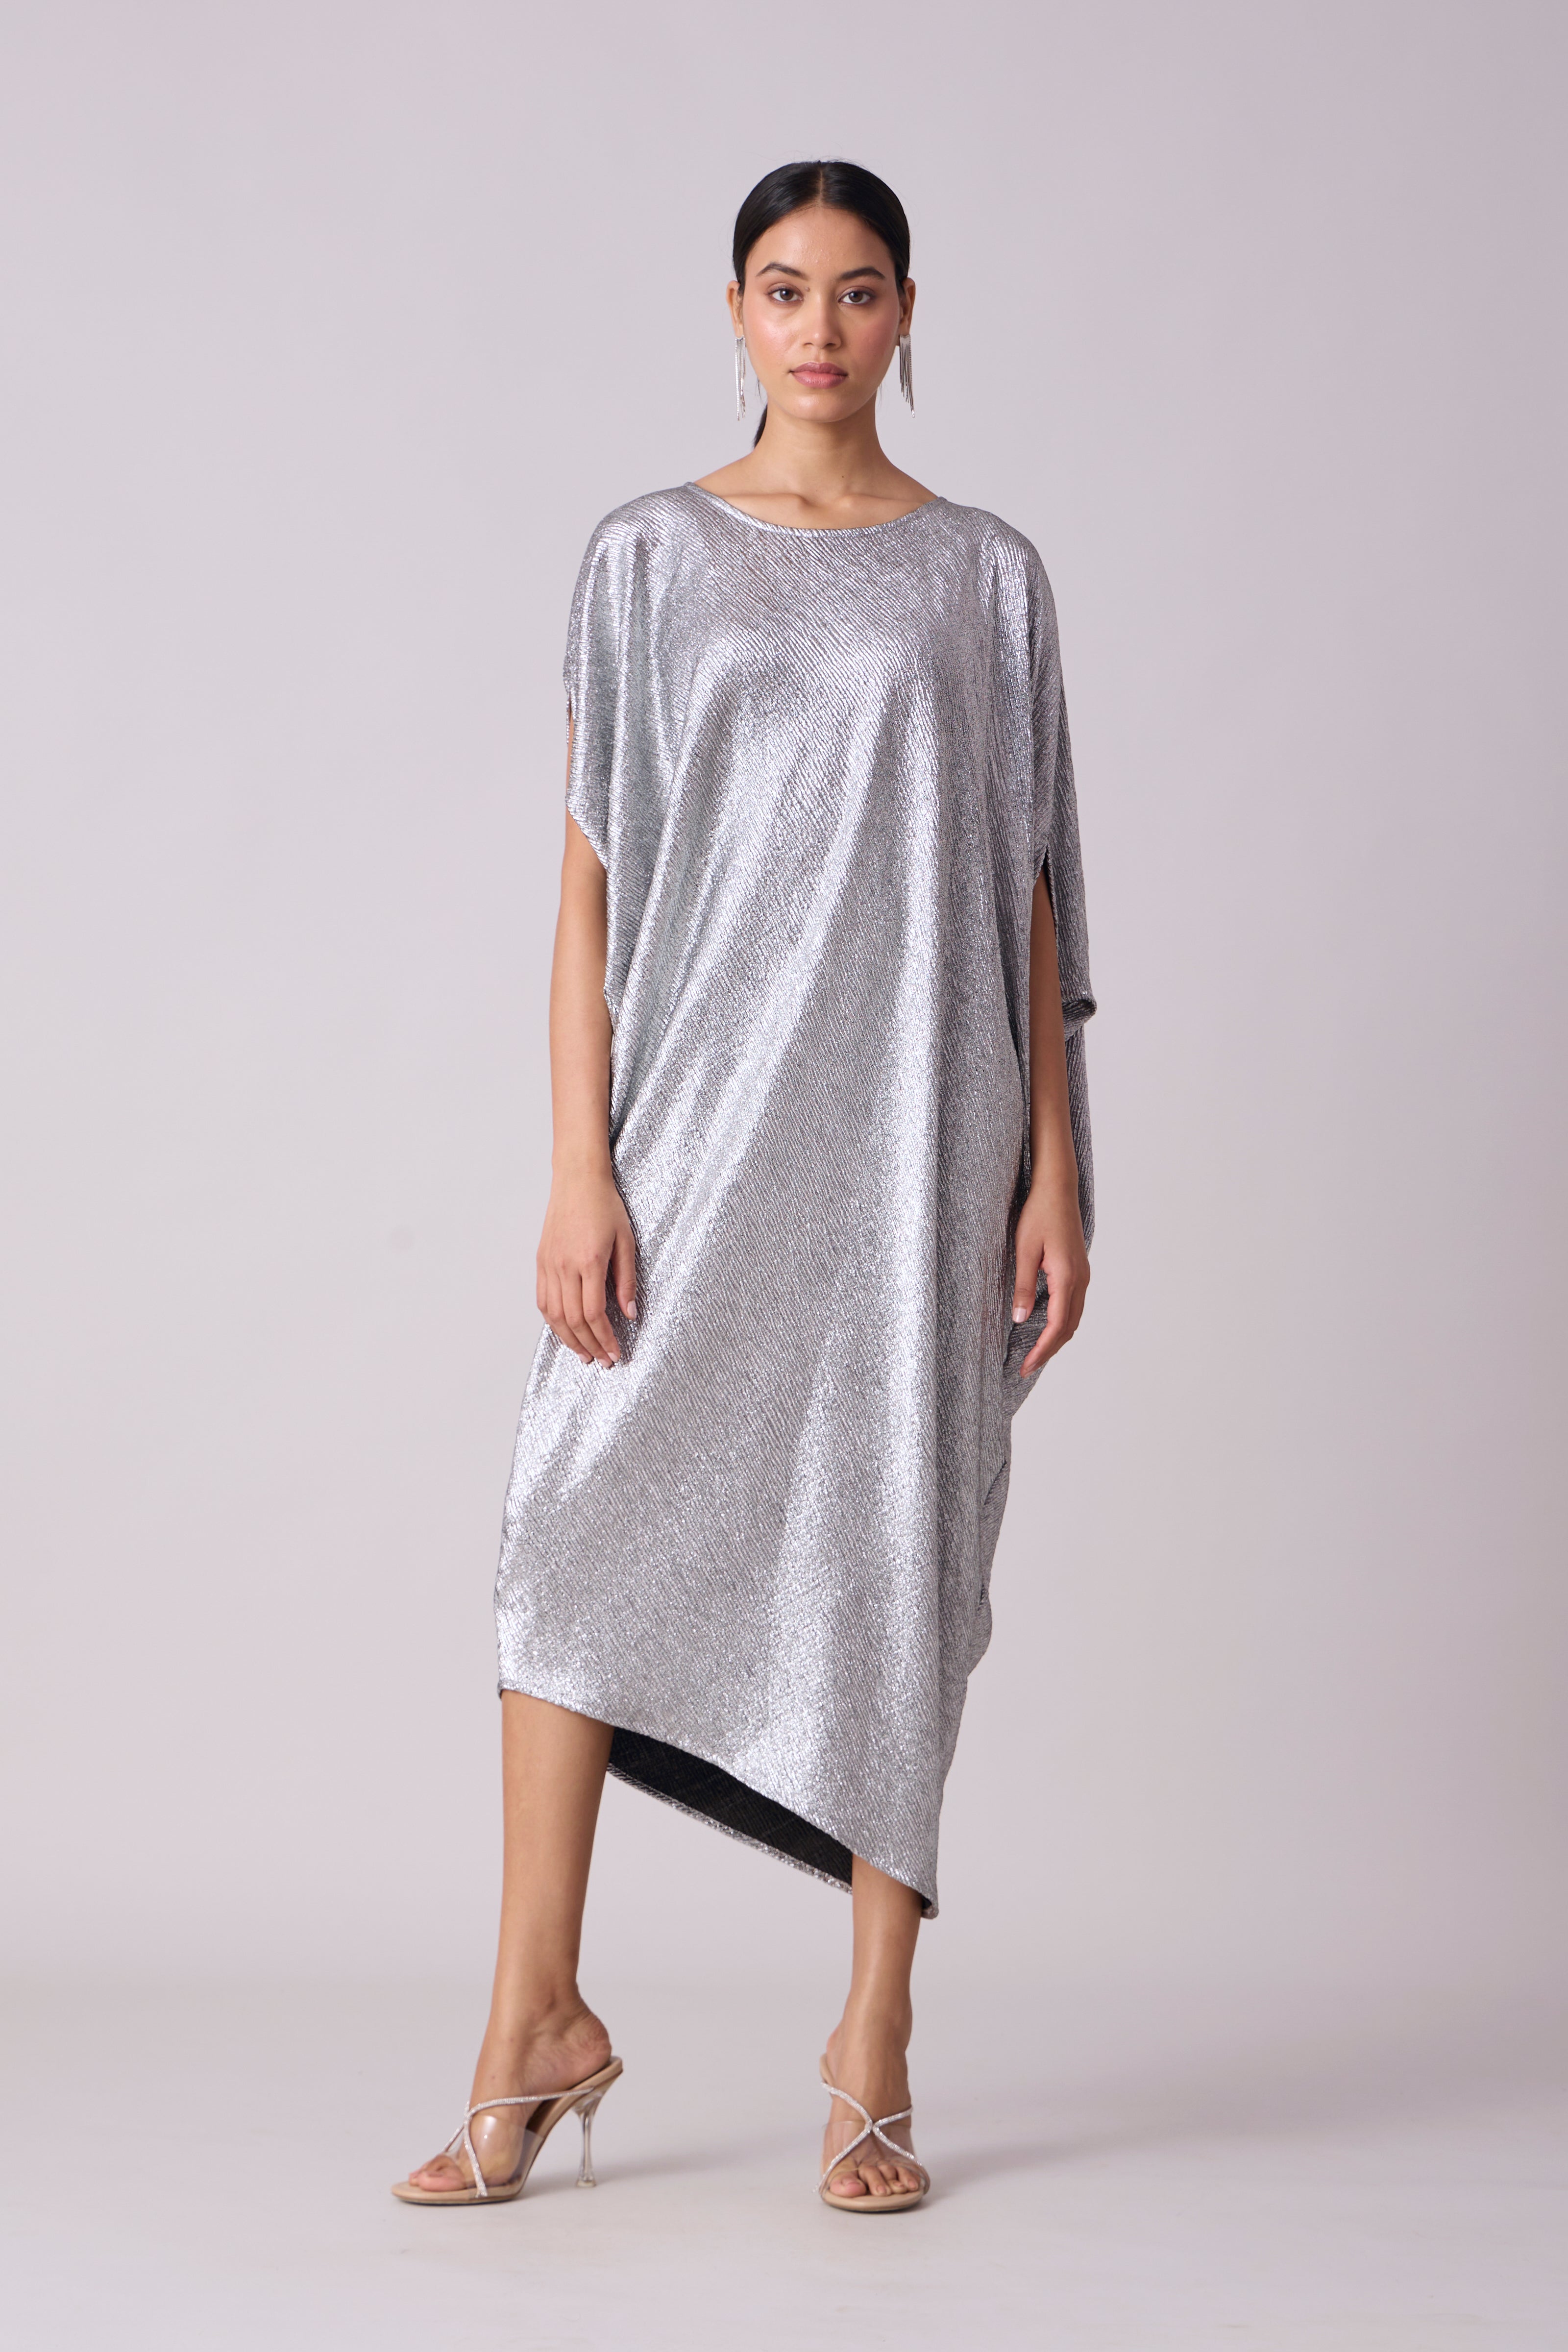 Aurelia Dress - Textured Silver